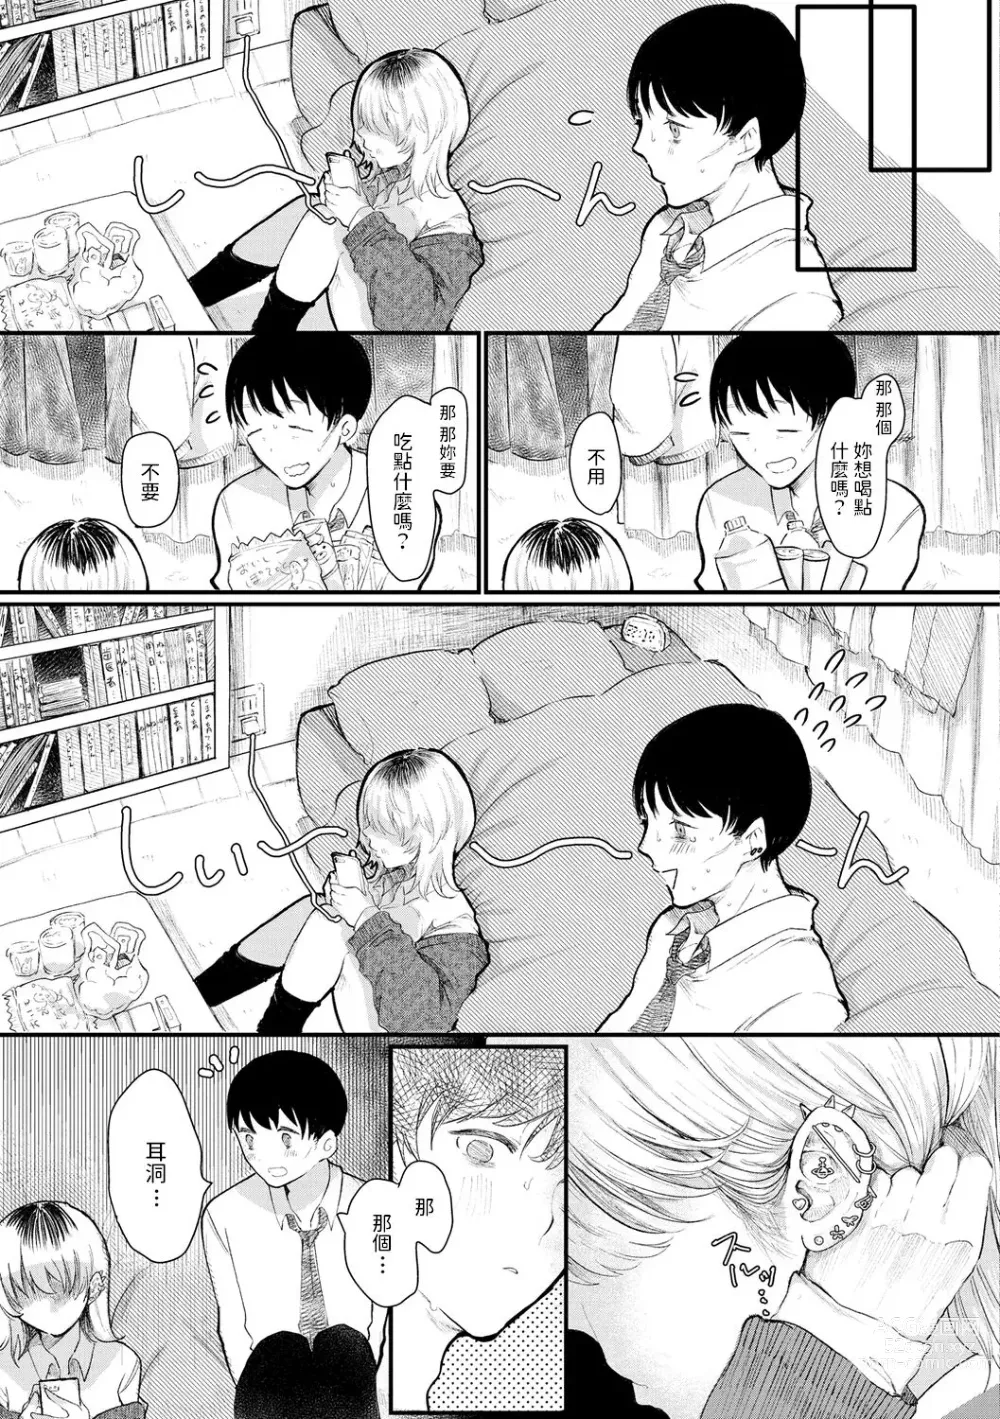 Page 3 of manga Pureless